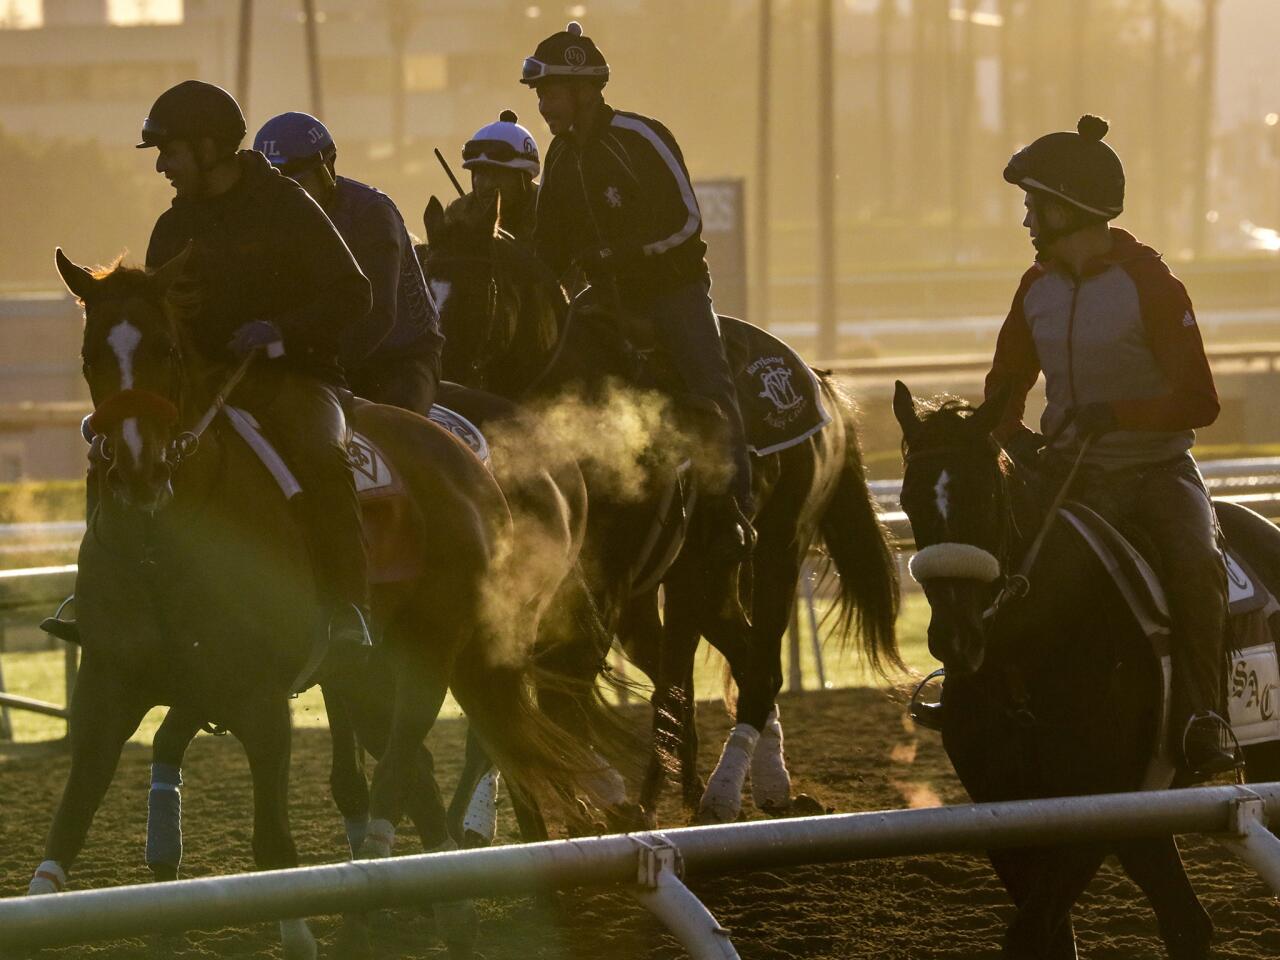 Horse racing resumes at Santa Anita